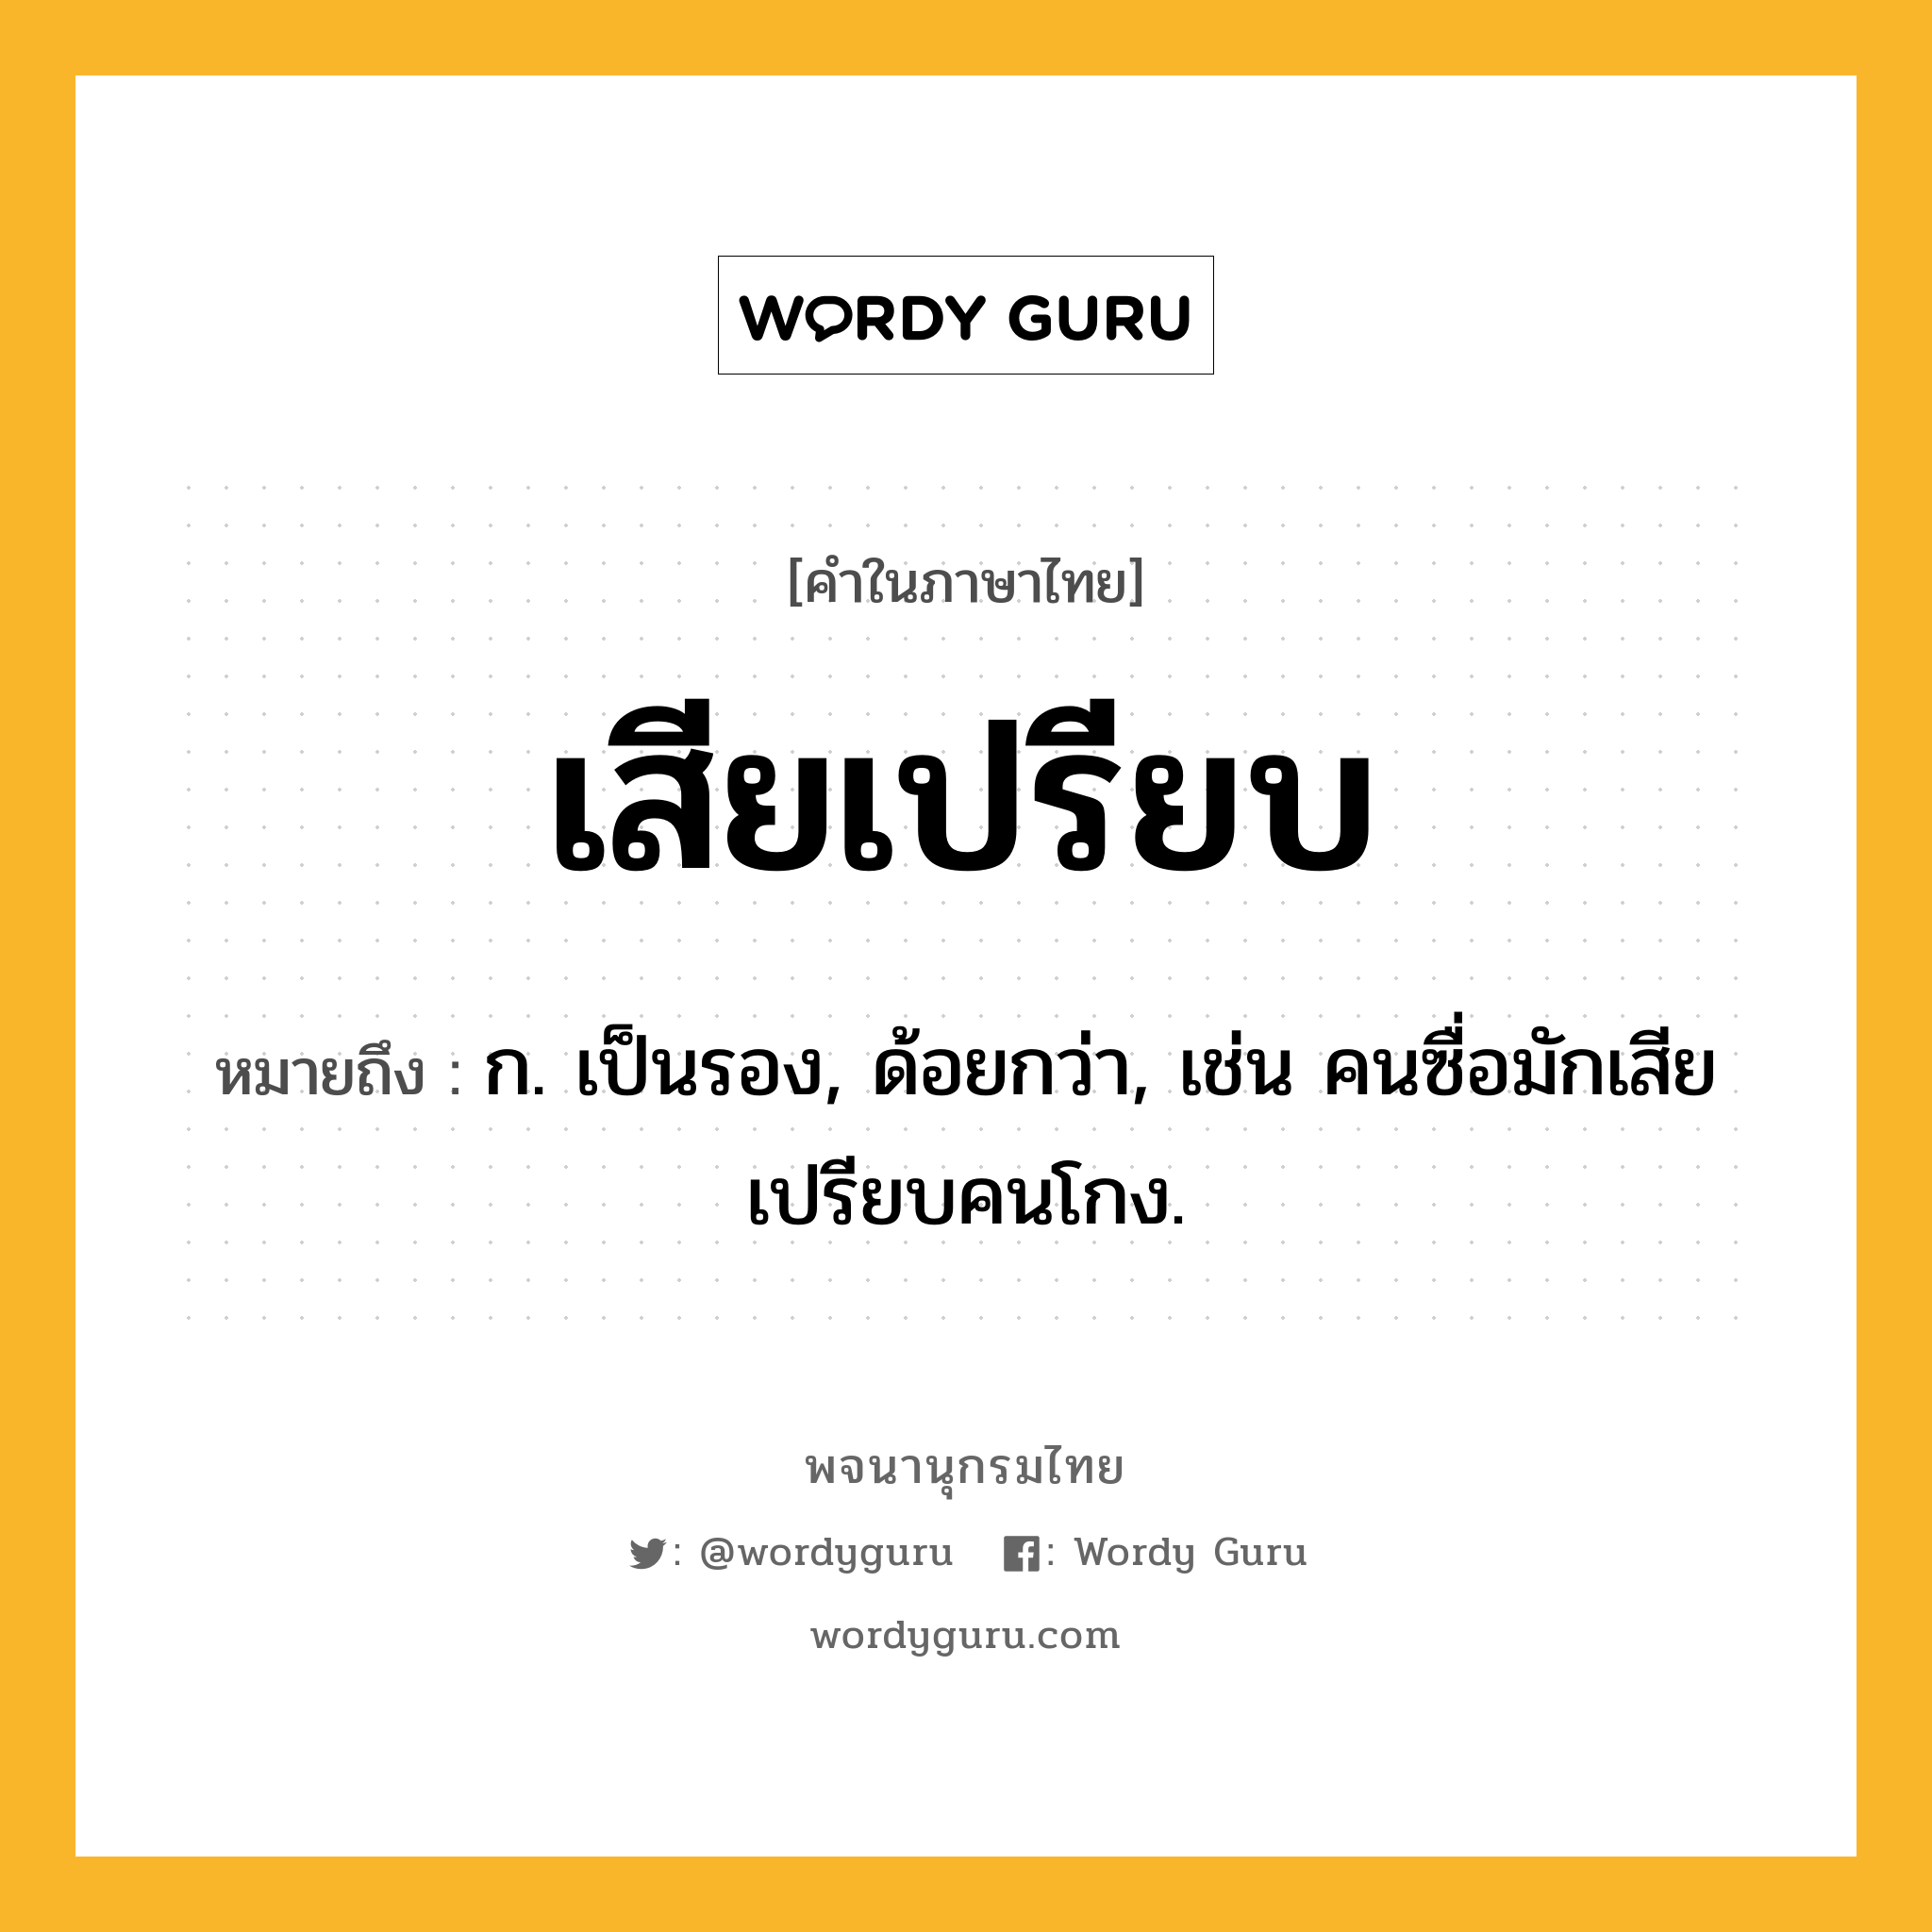 เสียเปรียบ หมายถึงอะไร?, คำในภาษาไทย เสียเปรียบ หมายถึง ก. เป็นรอง, ด้อยกว่า, เช่น คนซื่อมักเสียเปรียบคนโกง.